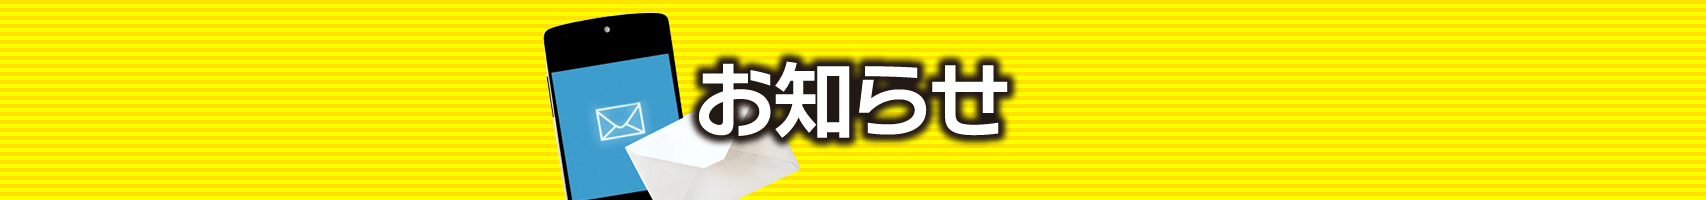 【無料公開】 大阪杯 / 亀谷サロン限定公開中のスマート出馬表・次期バージョン